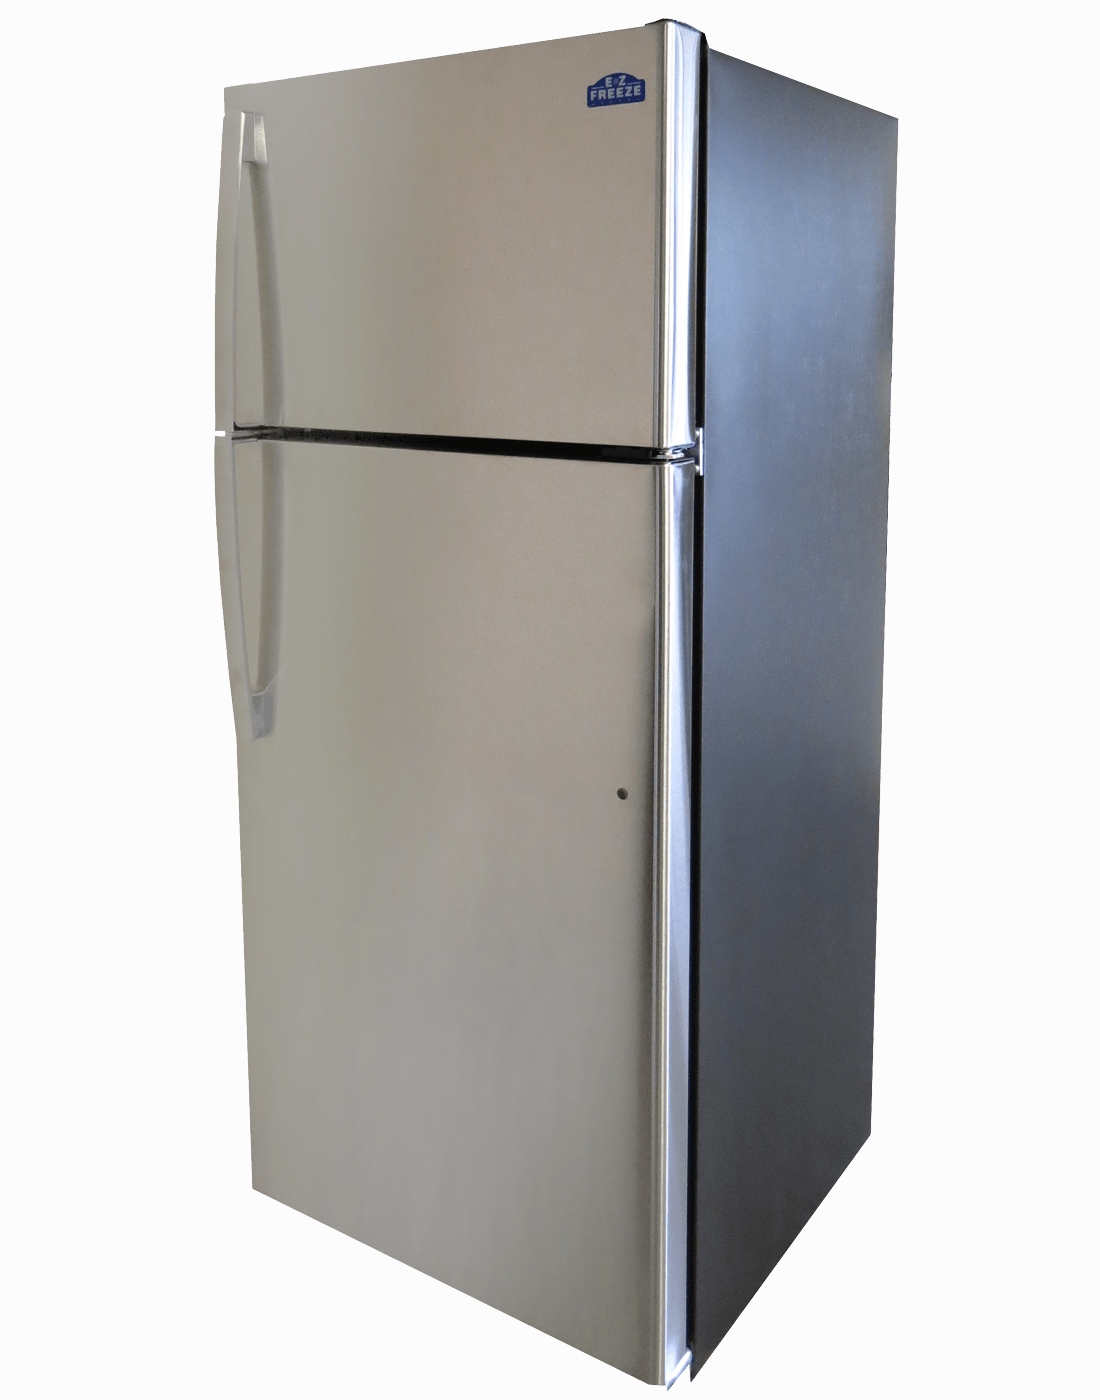 EZ Freeze Propane Refrigerator EZ Freeze EZ-19SS 19 cu. ft. Propane Refrigerator-Freezer Stainless Steel